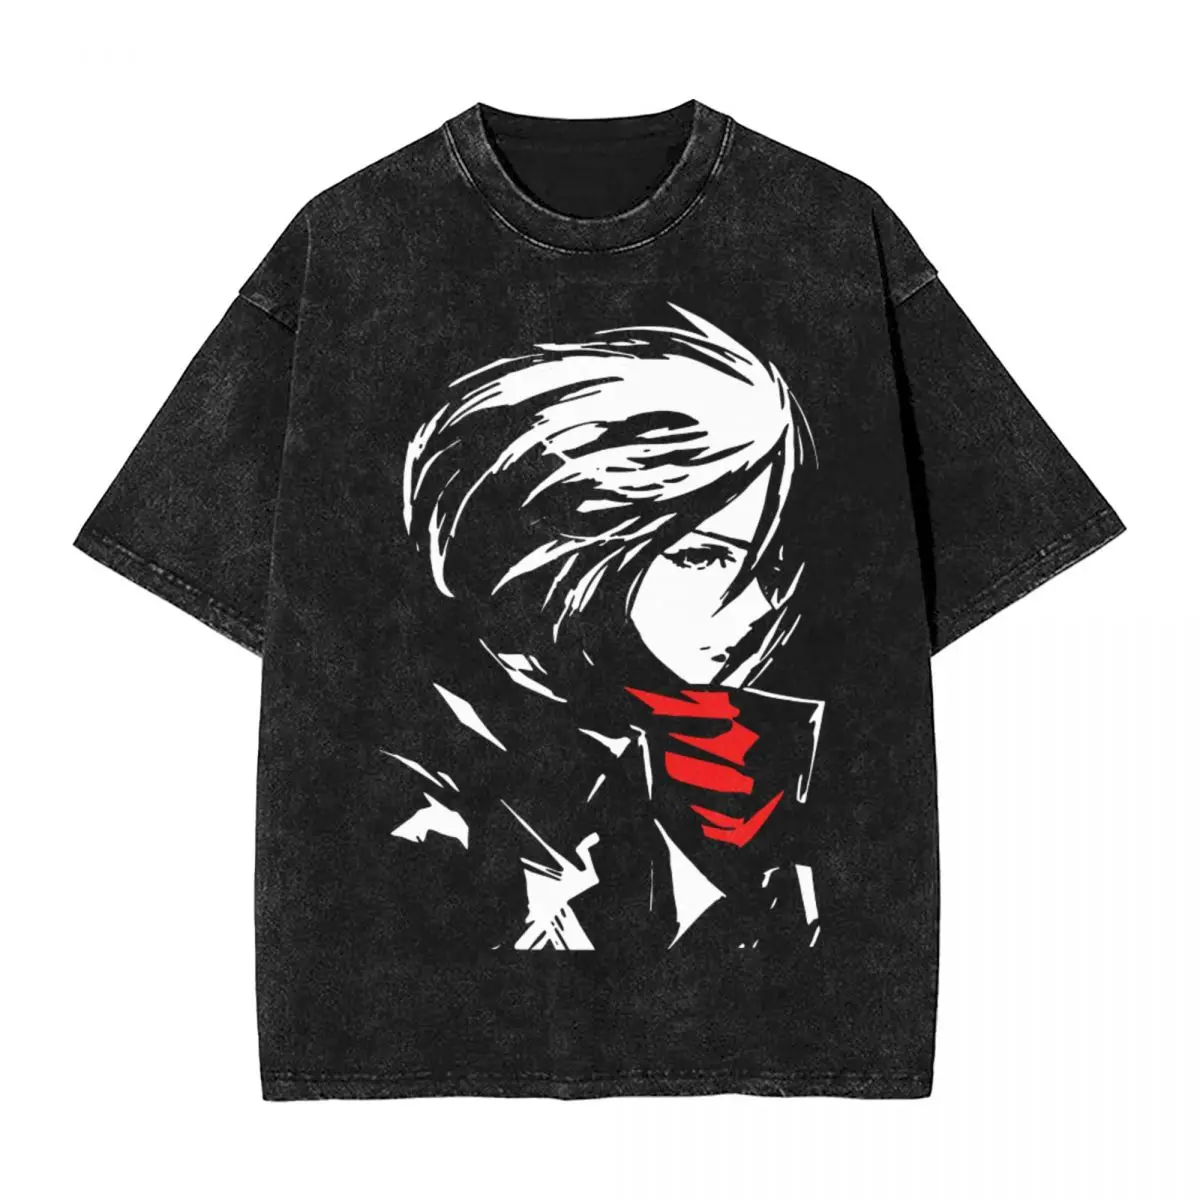 

Футболка Mikasa Ackerman с эффектом «атака на Титанов», вареная уличная одежда в стиле хип-хоп, футболка оверсайз из хлопка, для мужчин и женщин